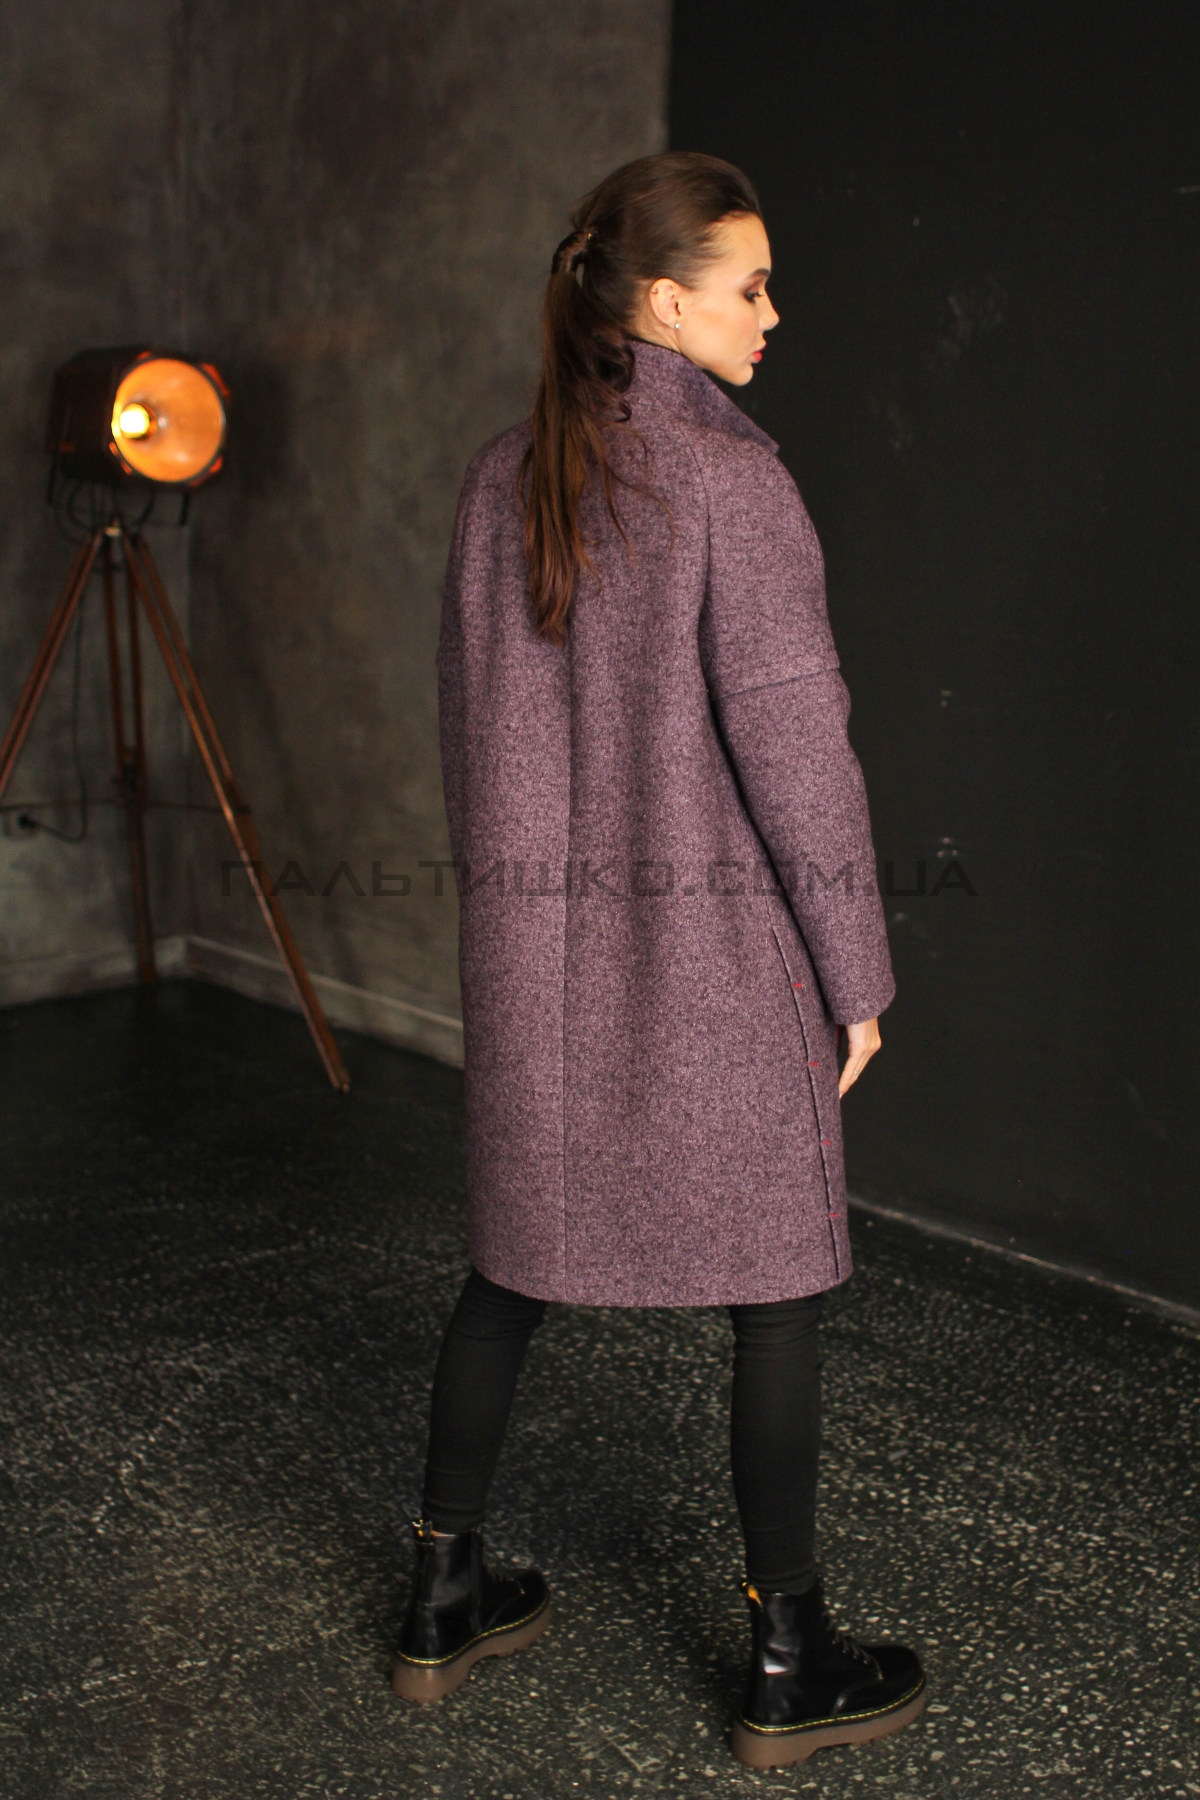  Жіноче пальто №159